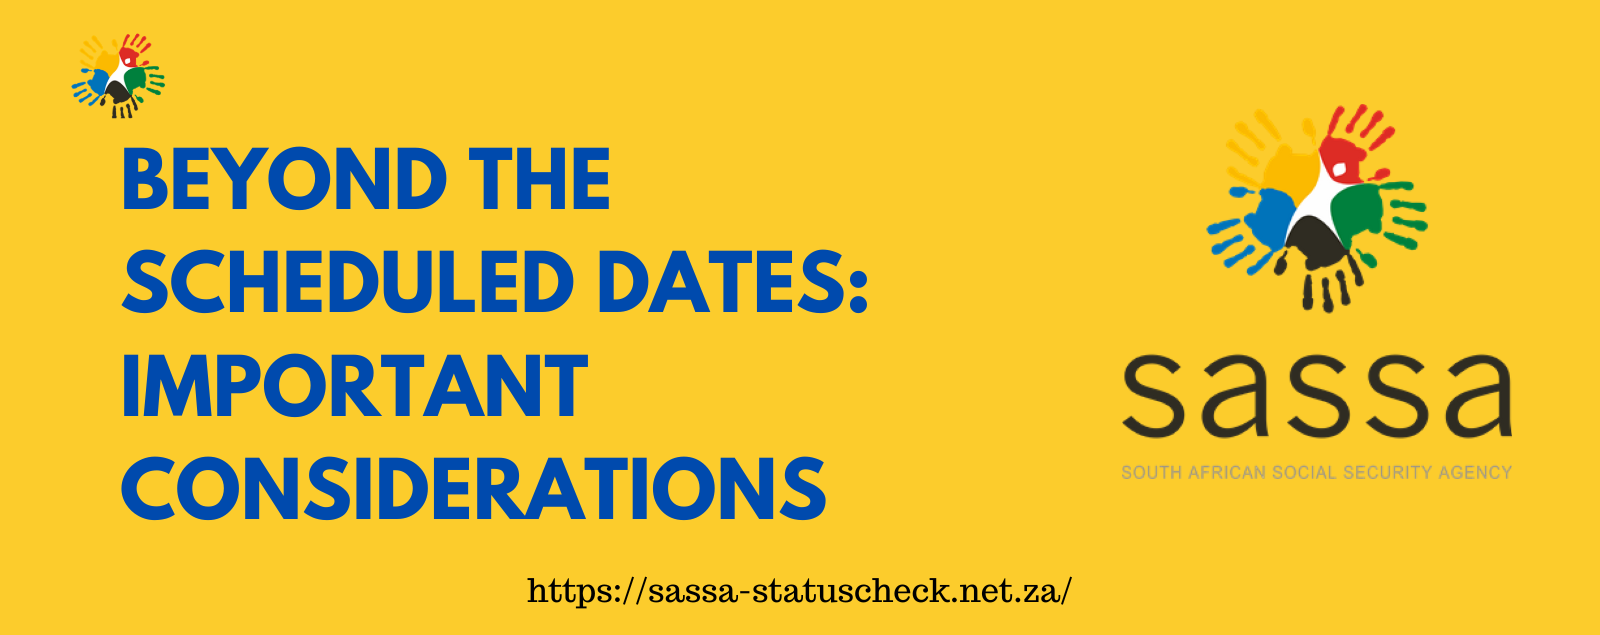 Sassa Payment Dates April 2024